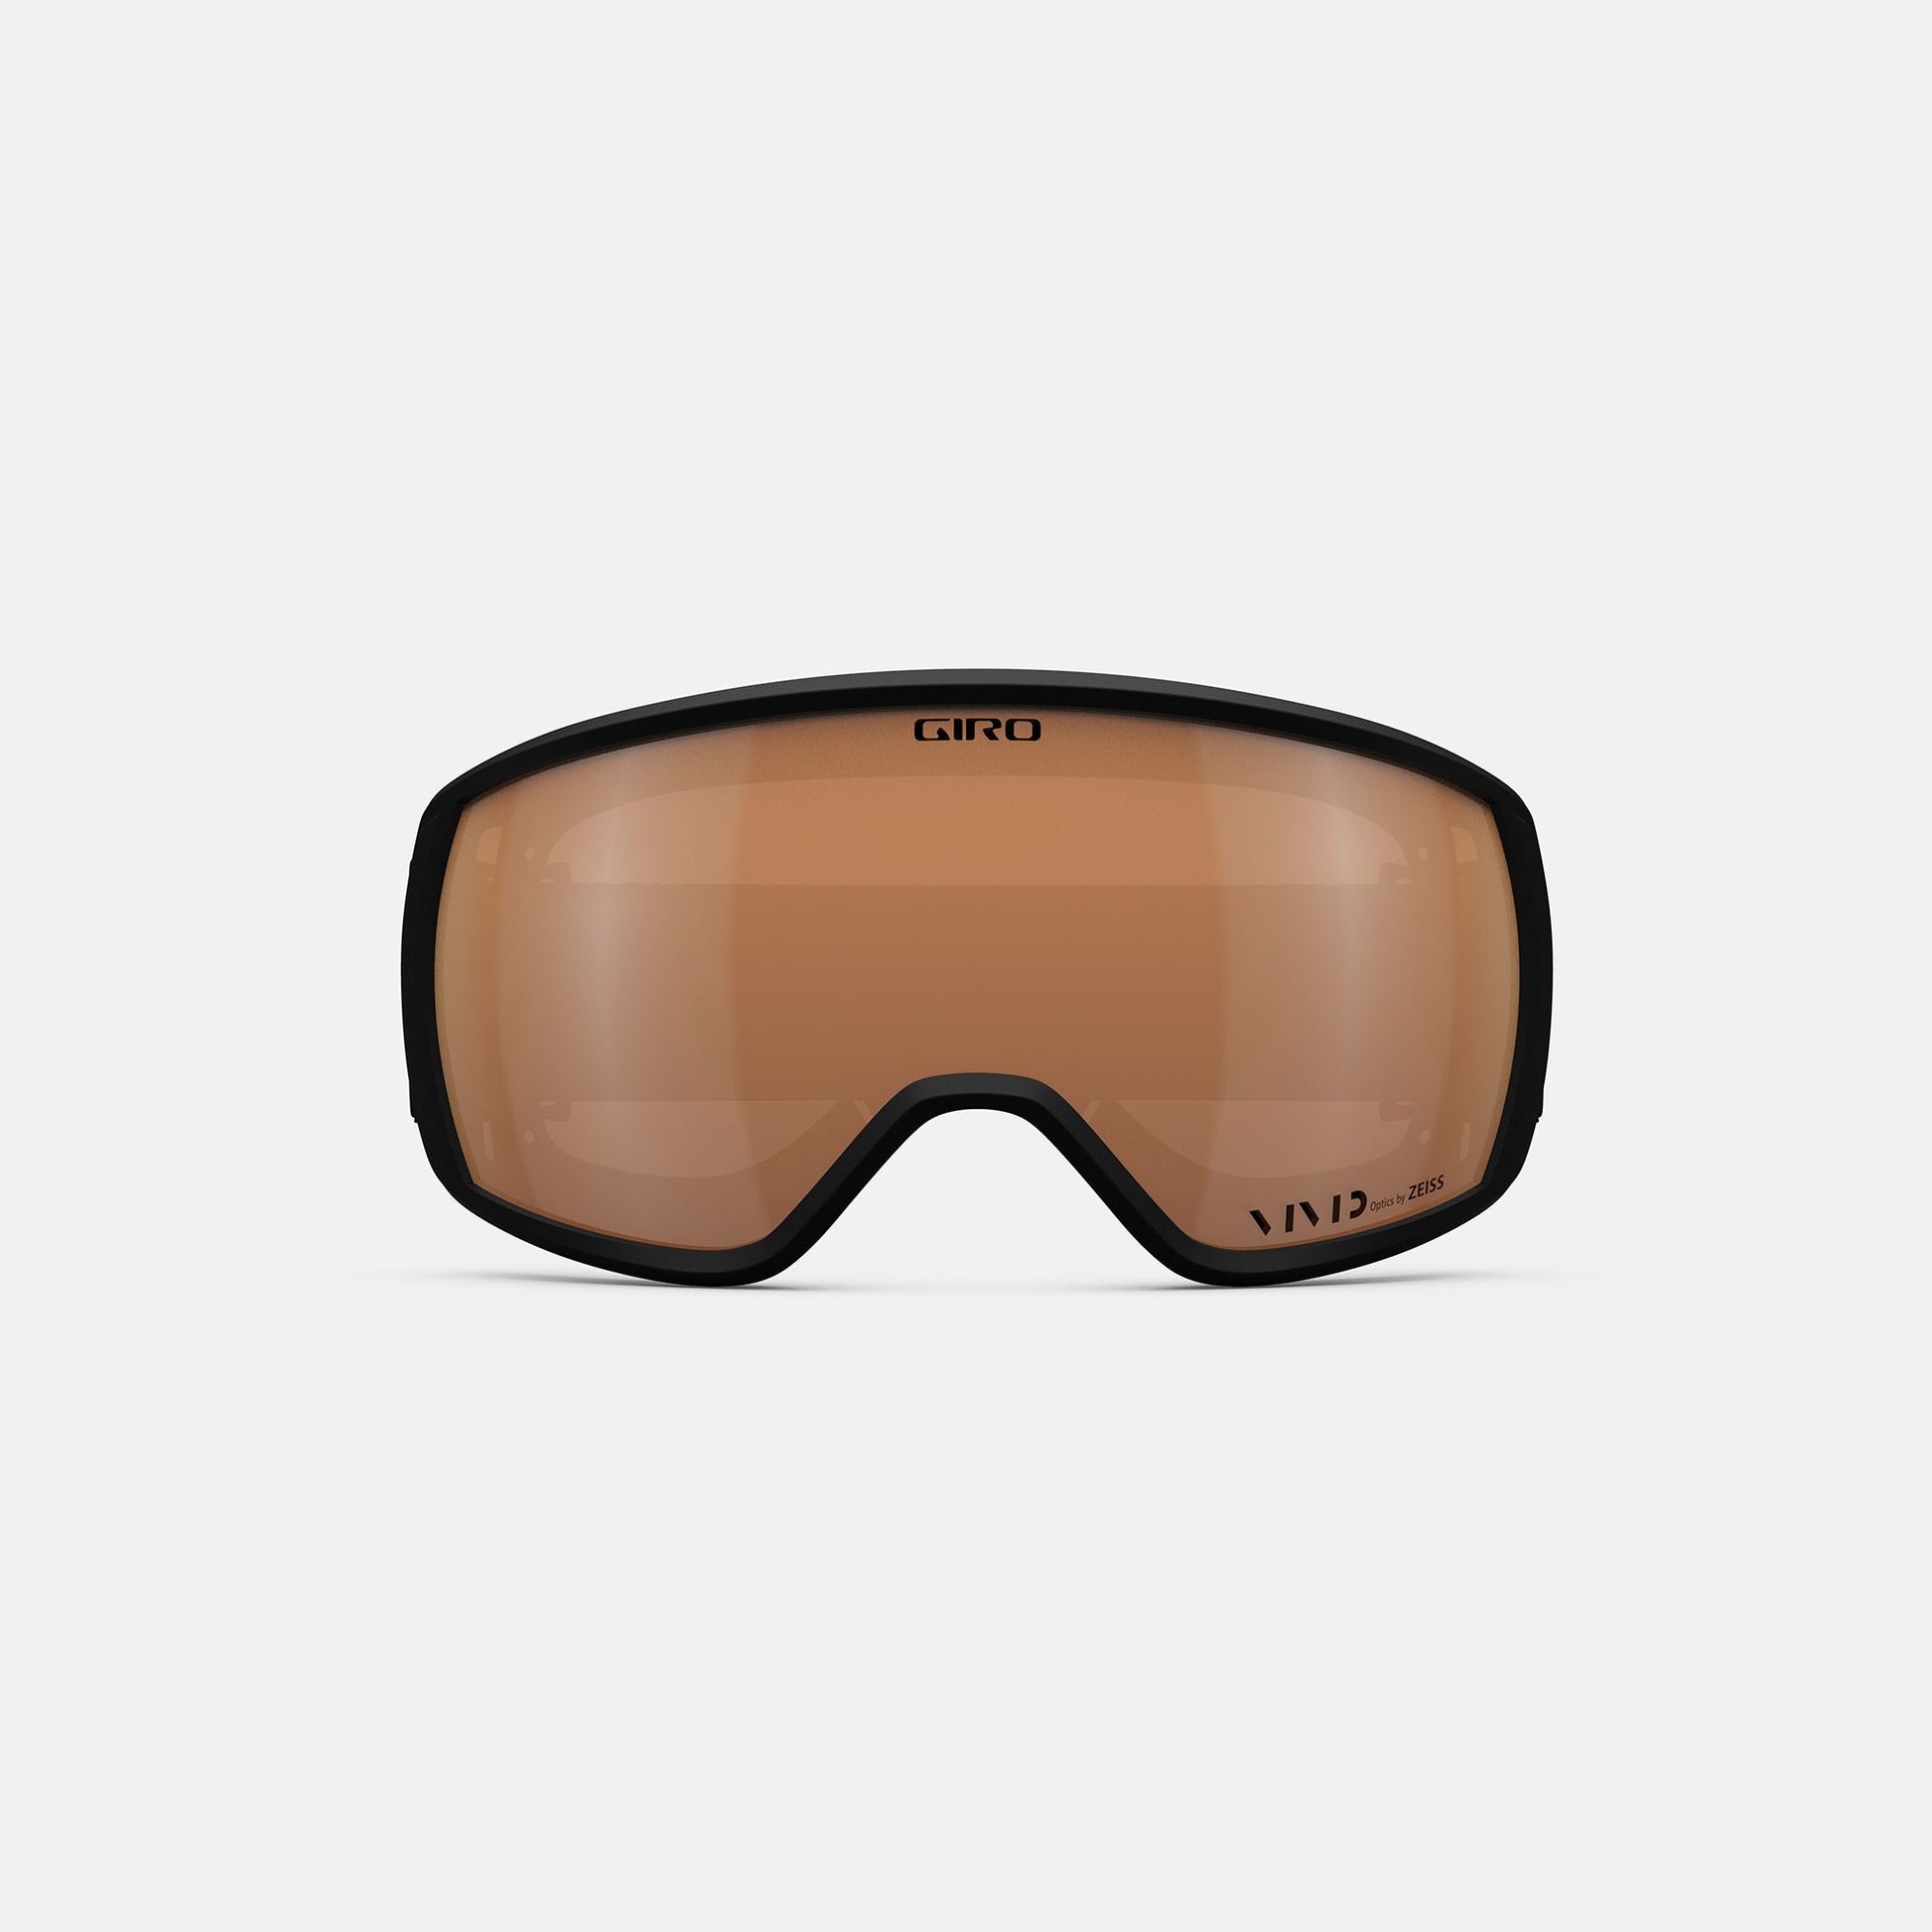 Giro Women's Facet Goggle Black Craze / Vivid Copper Snow Goggles